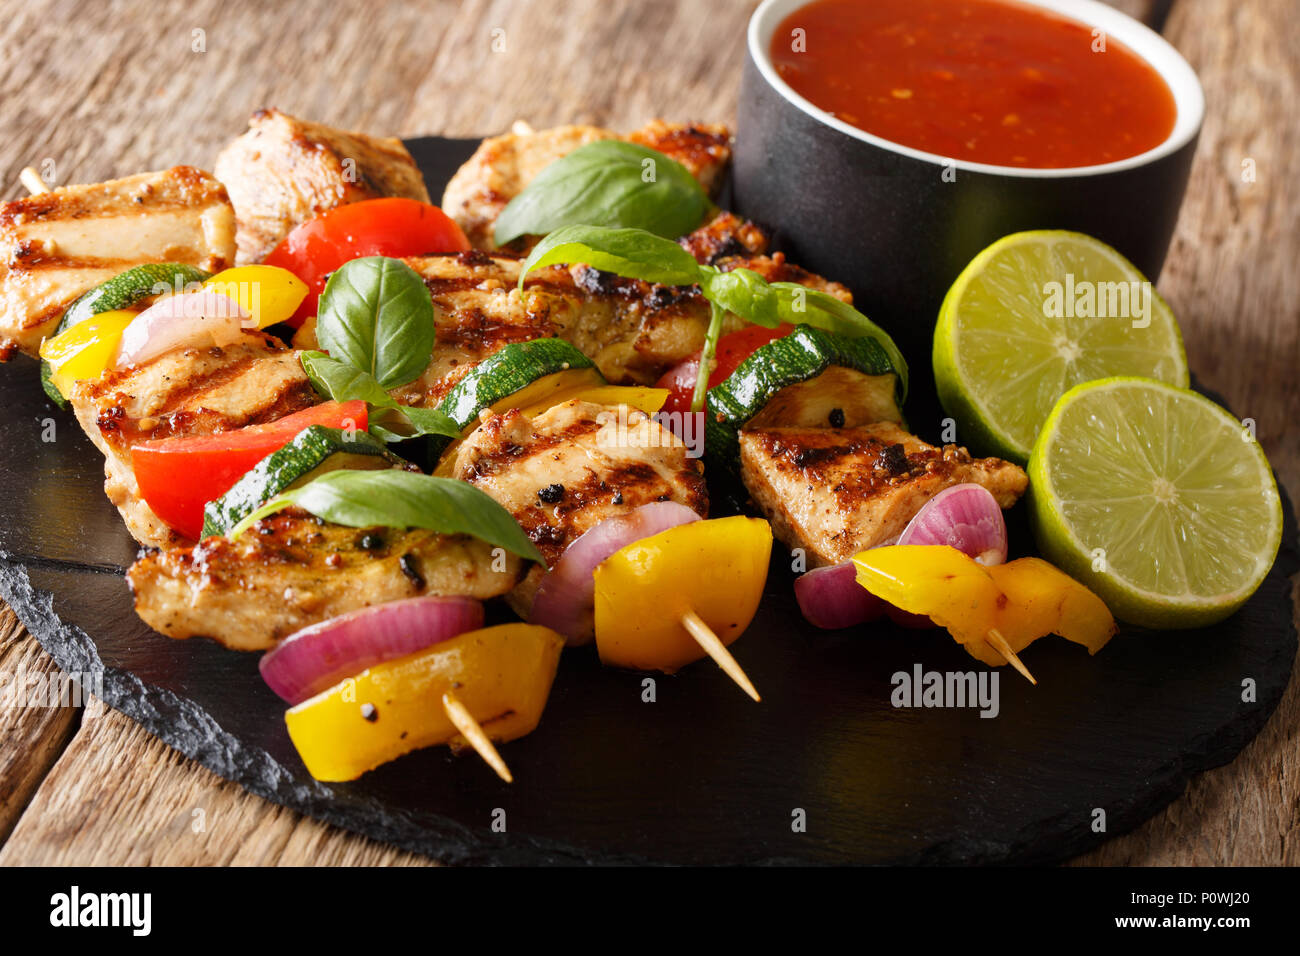 Brocheta de pollo a la parrilla con verduras de verano con salsa de limón, albahaca y primer plano horizontal sobre la mesa. Foto de stock